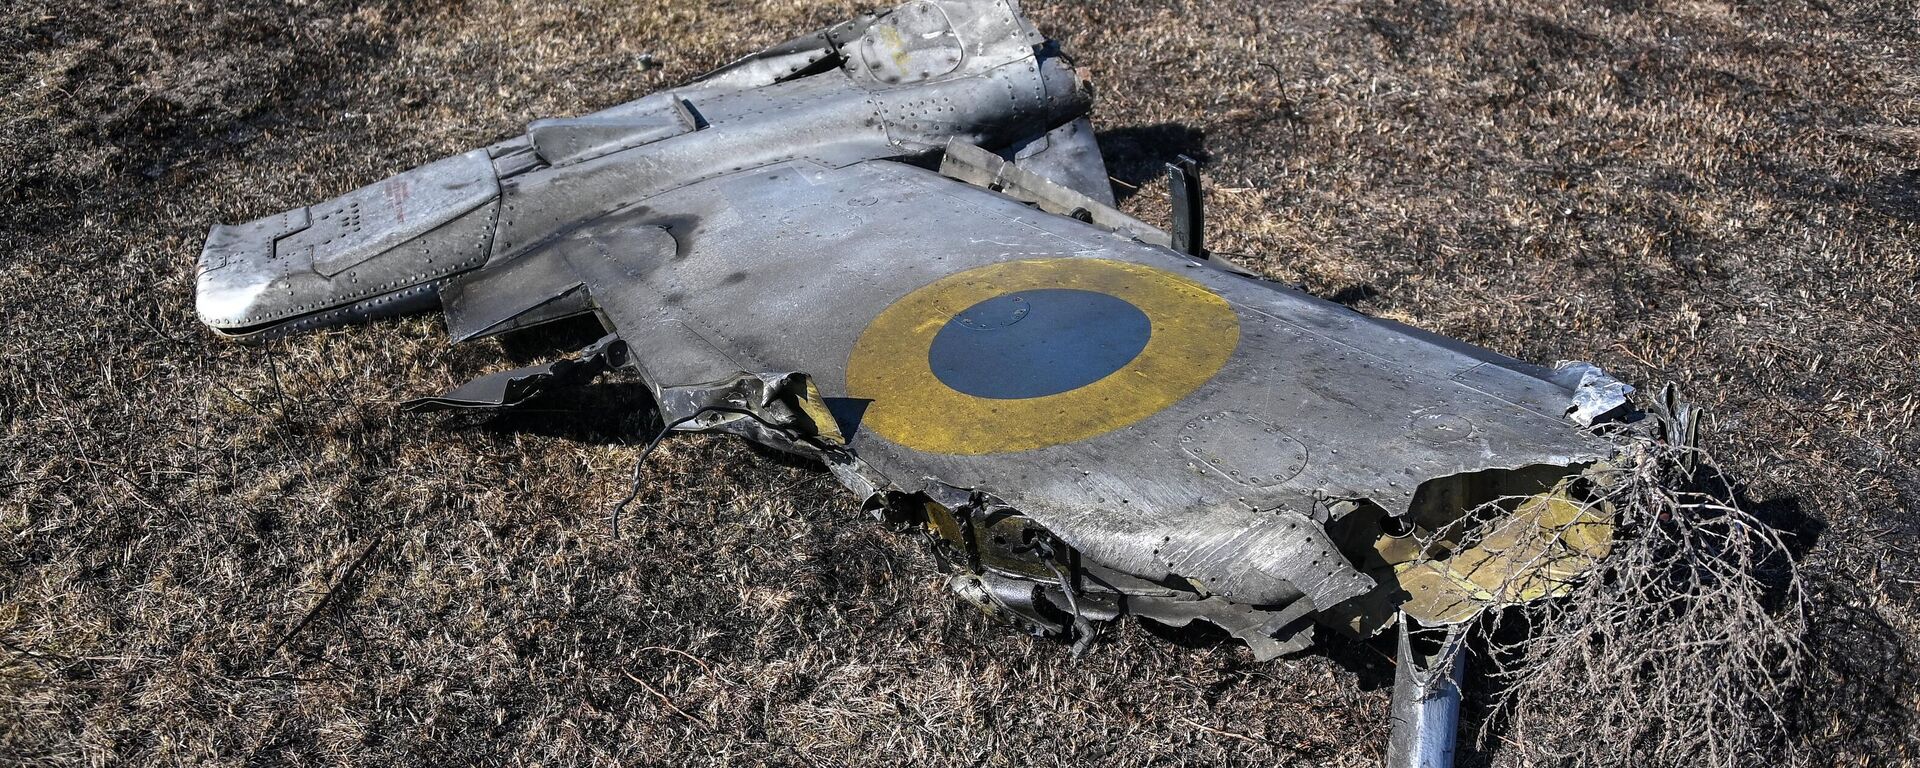 Обломок сбитого украинского штурмовика Су-25 в Херсонской области - Sputnik Латвия, 1920, 16.05.2022